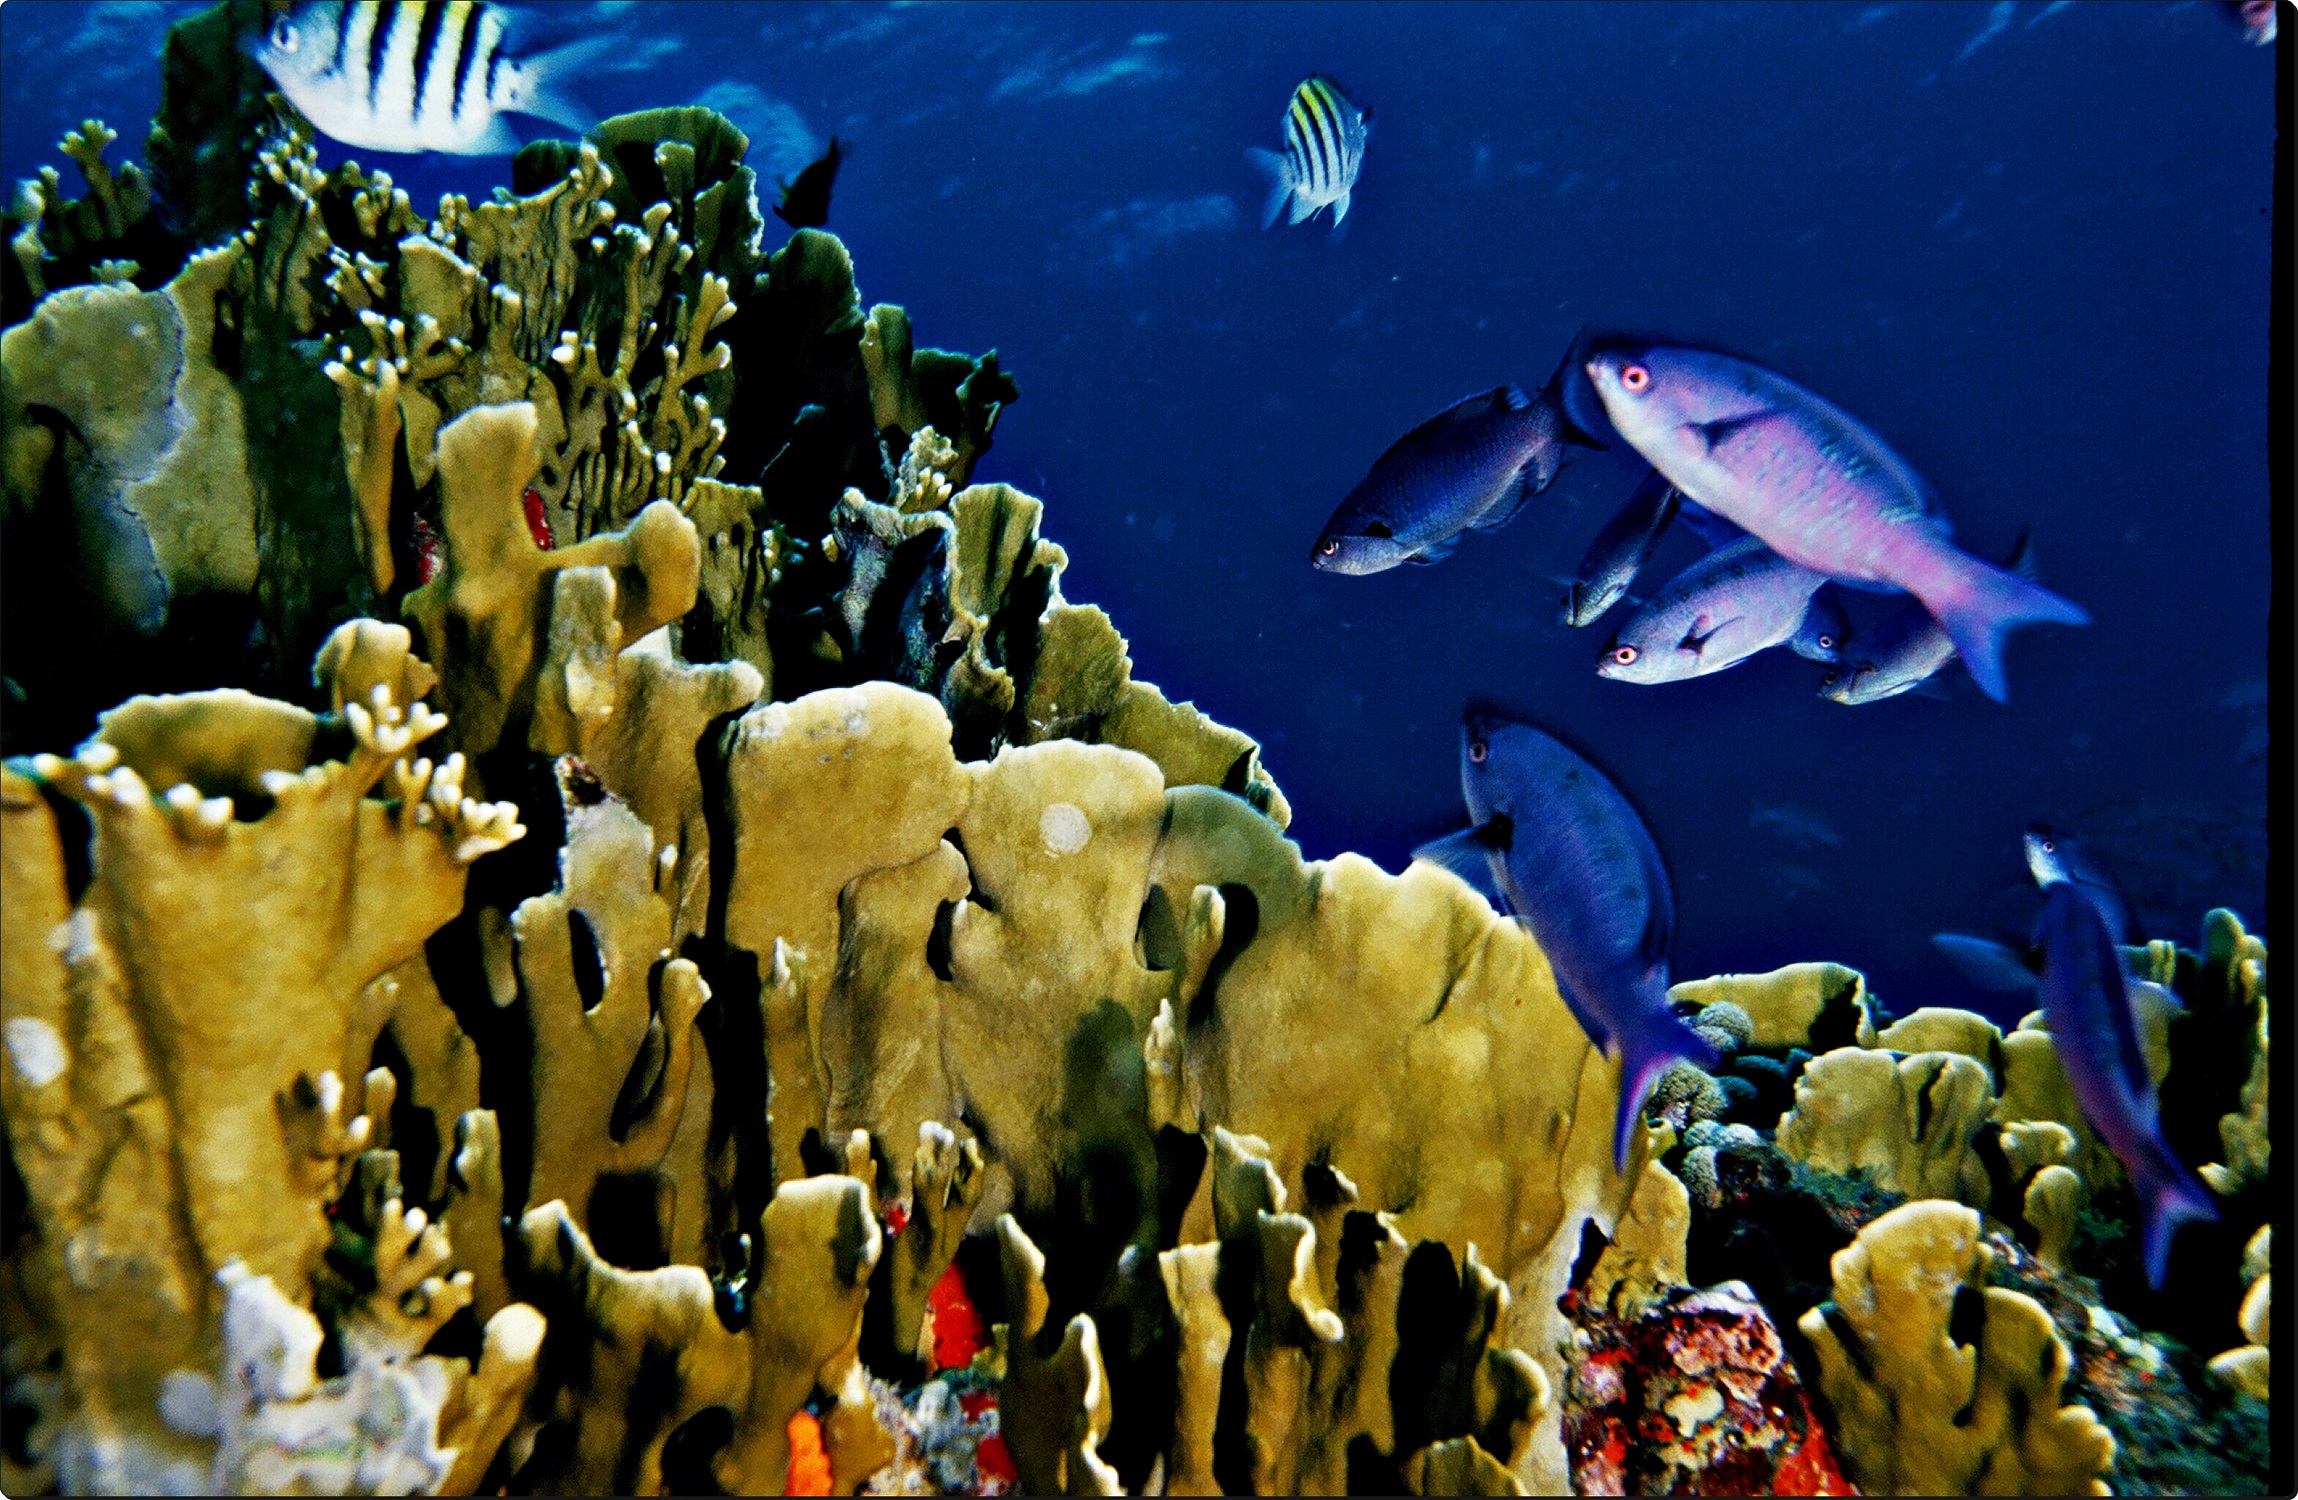 Frontal de grupo de peces rodeando a coral.